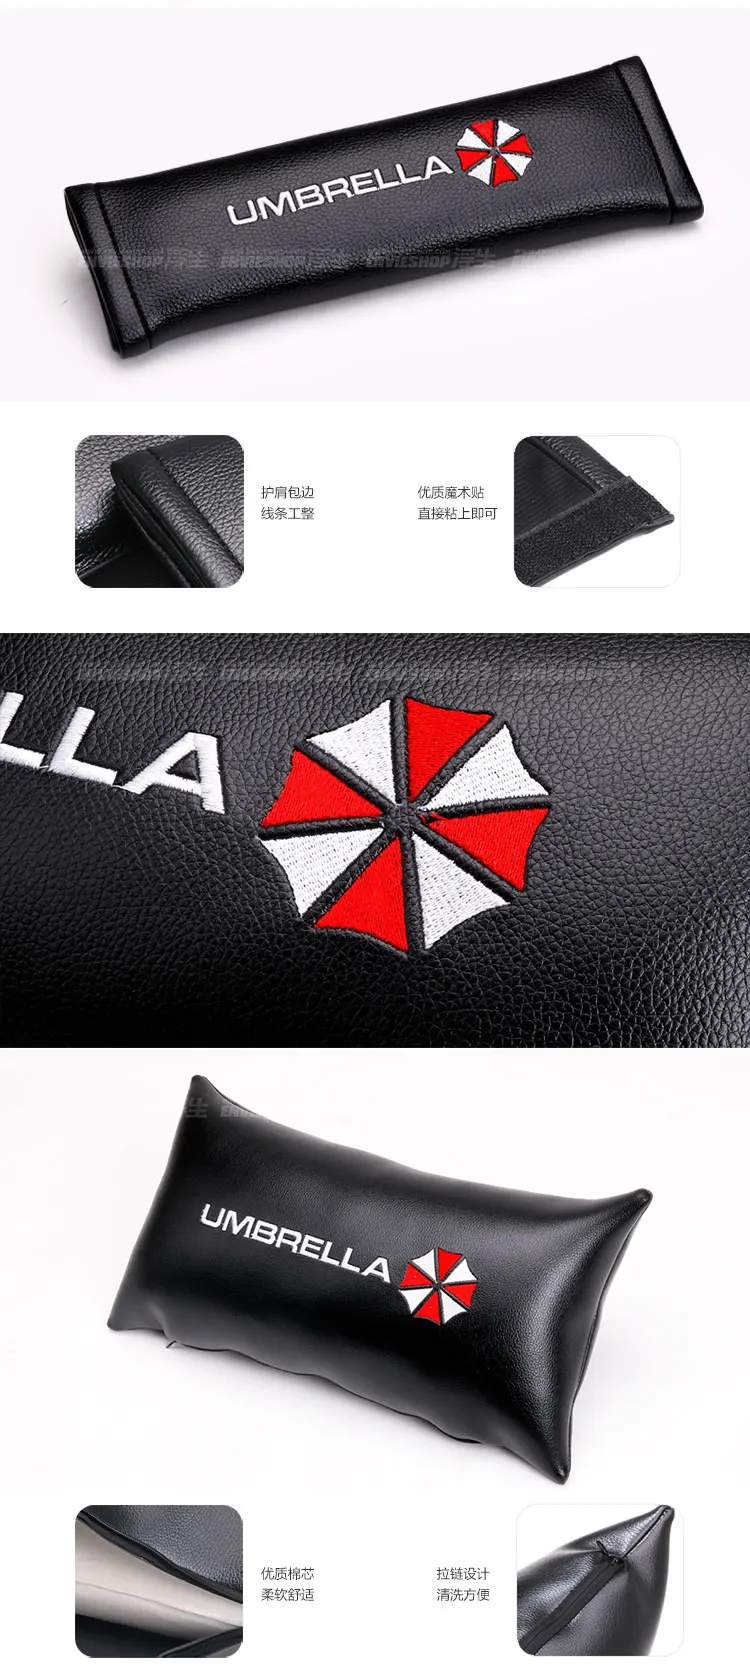 Noizzy Umbrella корпорация Ho автомобильные аксессуары поясная подушка для шеи Авто Ремень для сиденья Наплечная Подушка защита от пота комфортный Стайлинг автомобиля